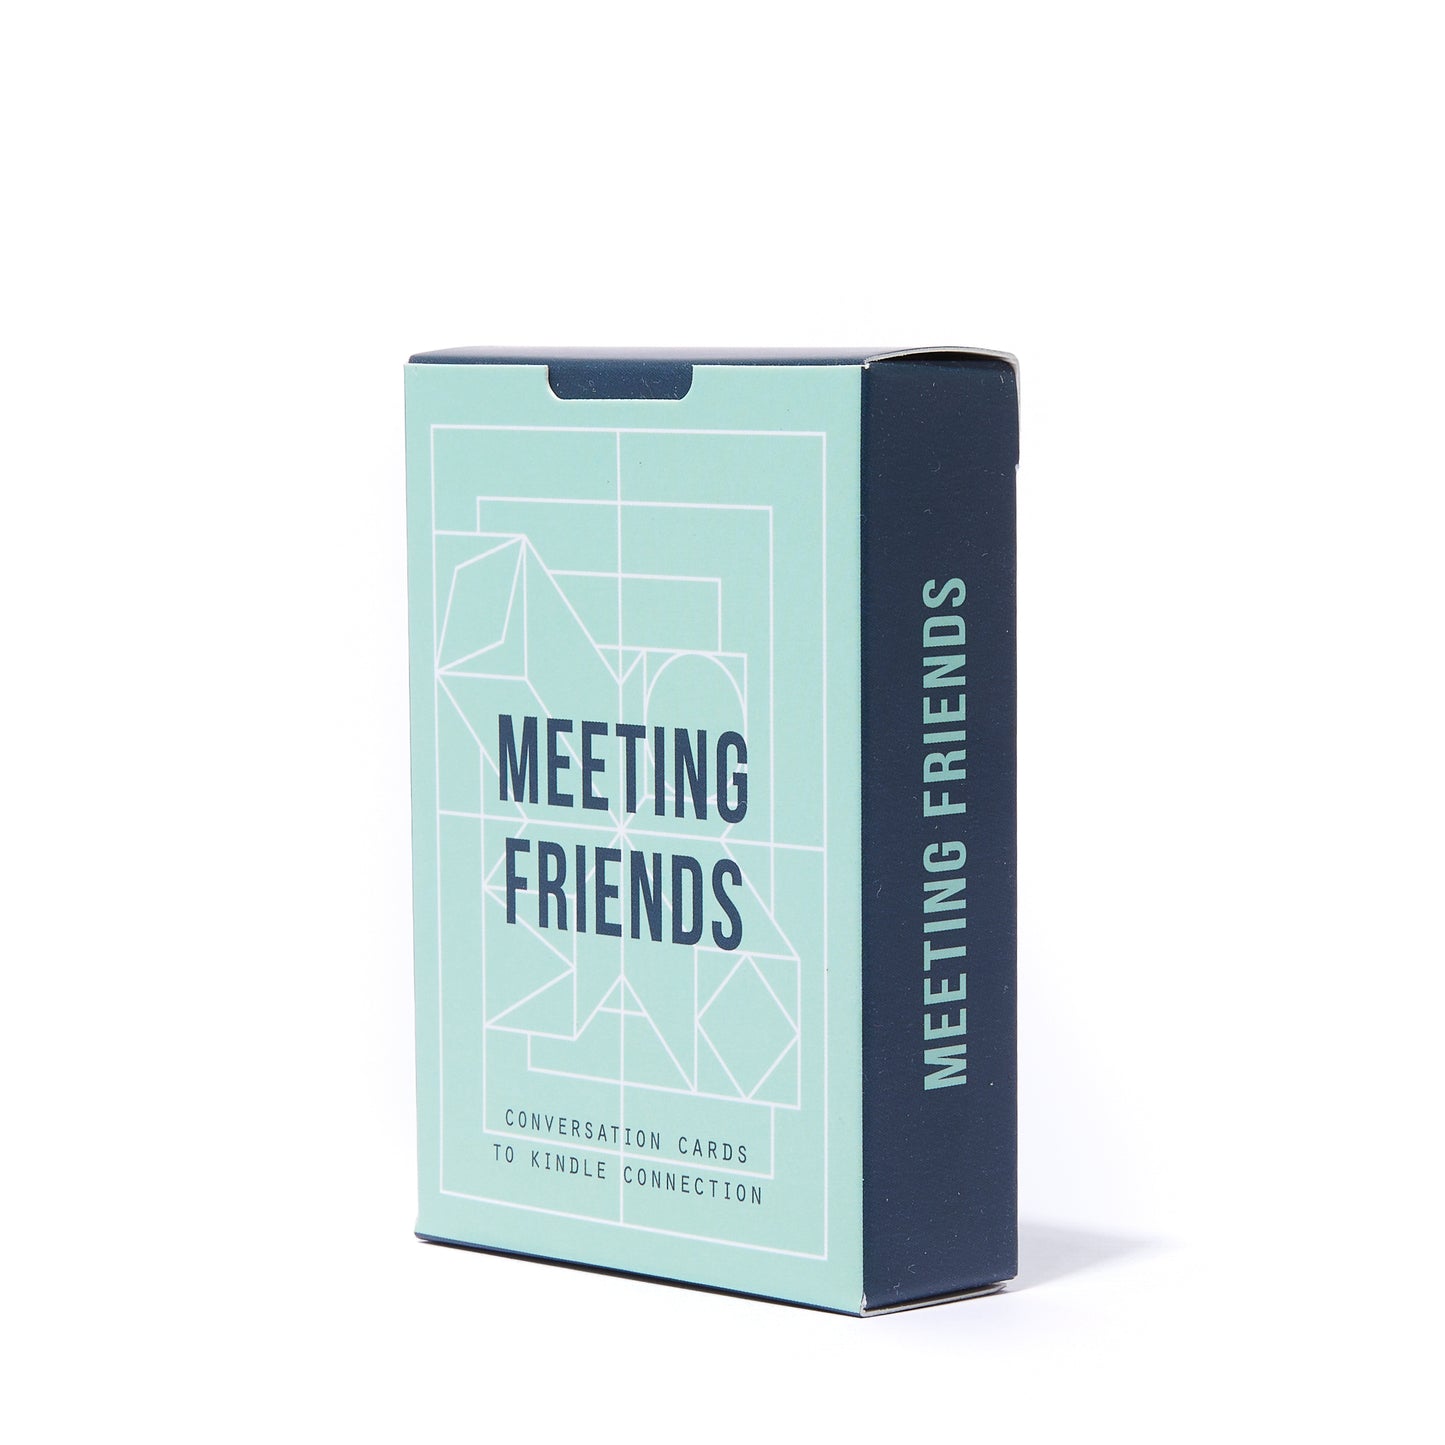 MEETING FRIENDS CARD SET